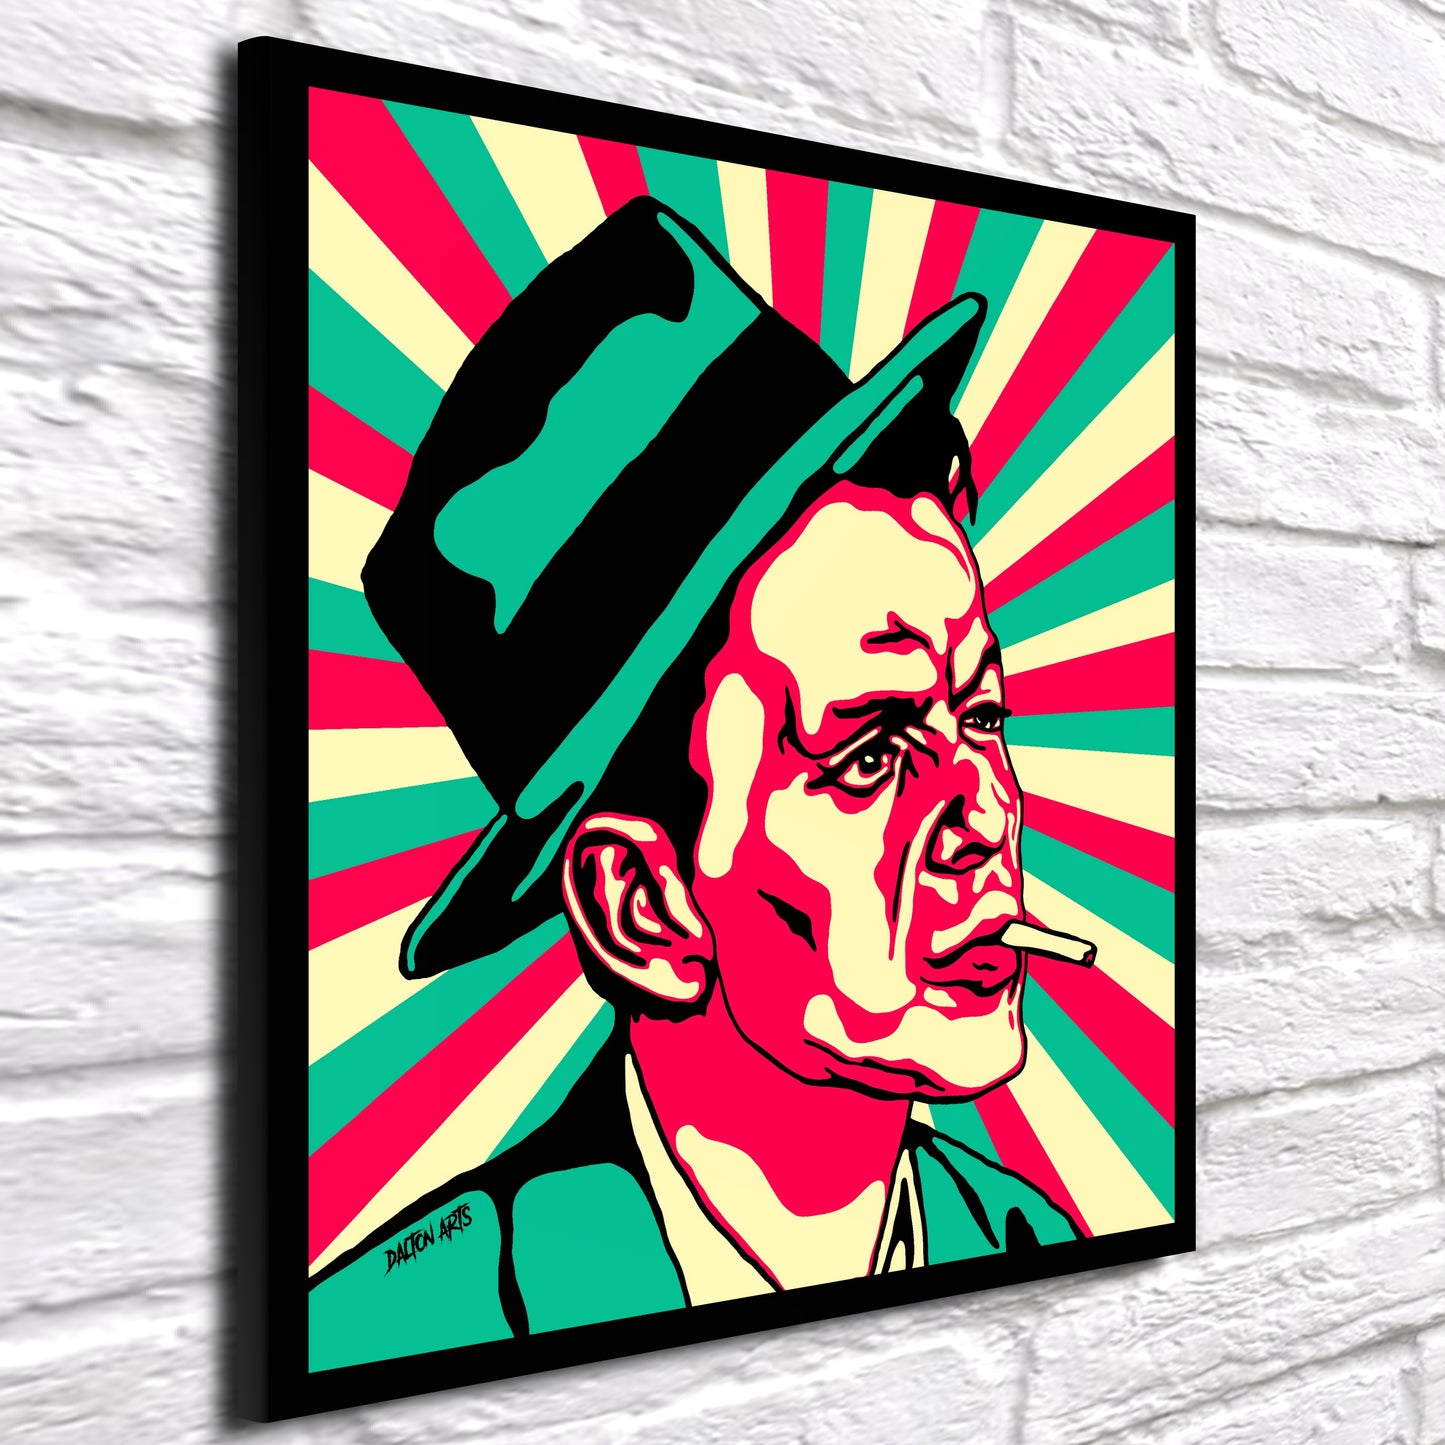 Frank Sinatra Pop Art